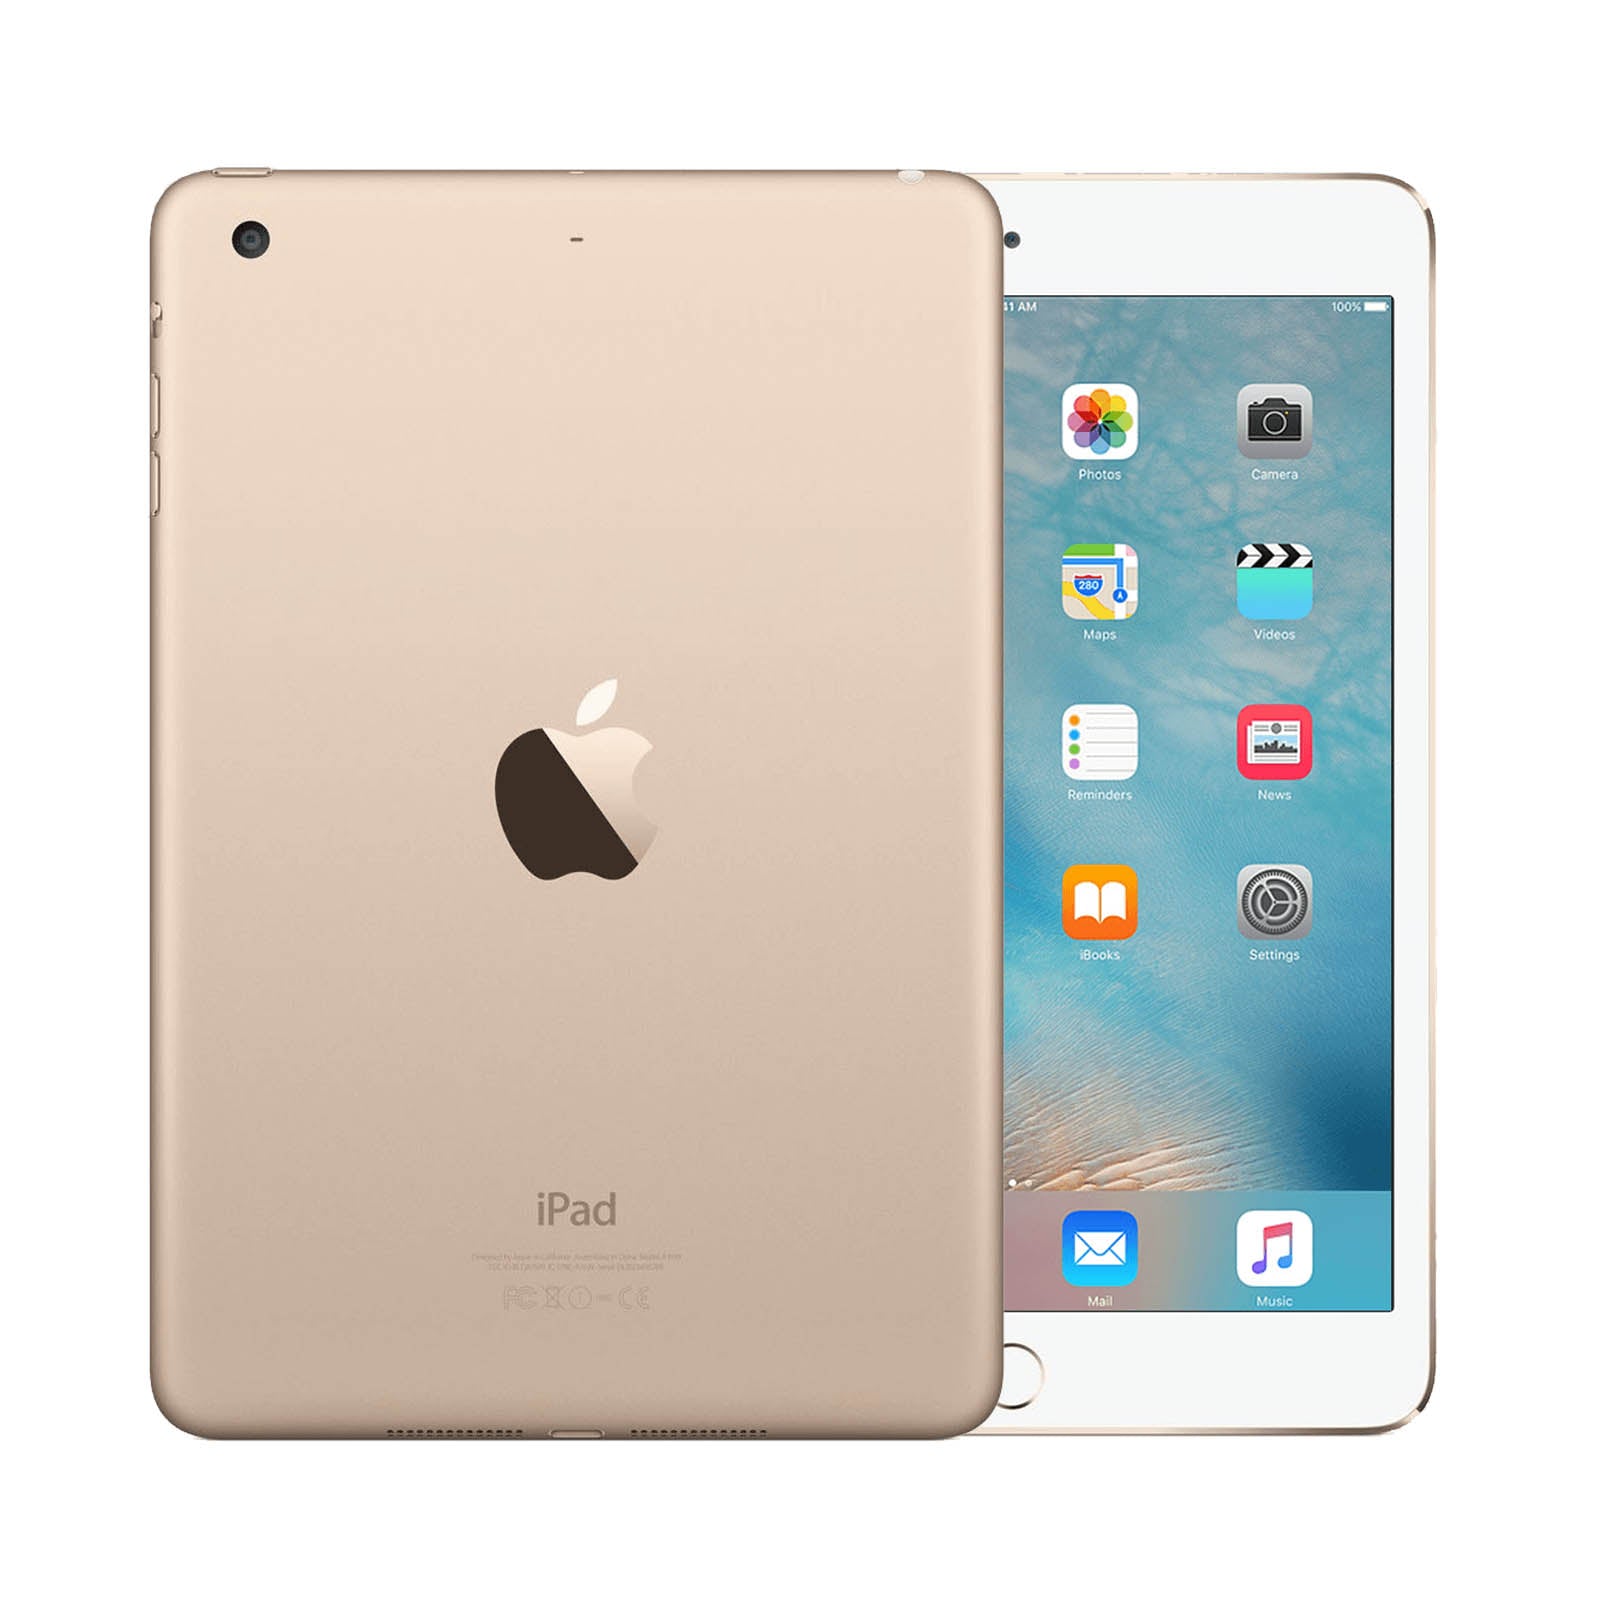 iPad Mini 3 64GB WiFi -Gold- Very Good 64GB Gold Very Good